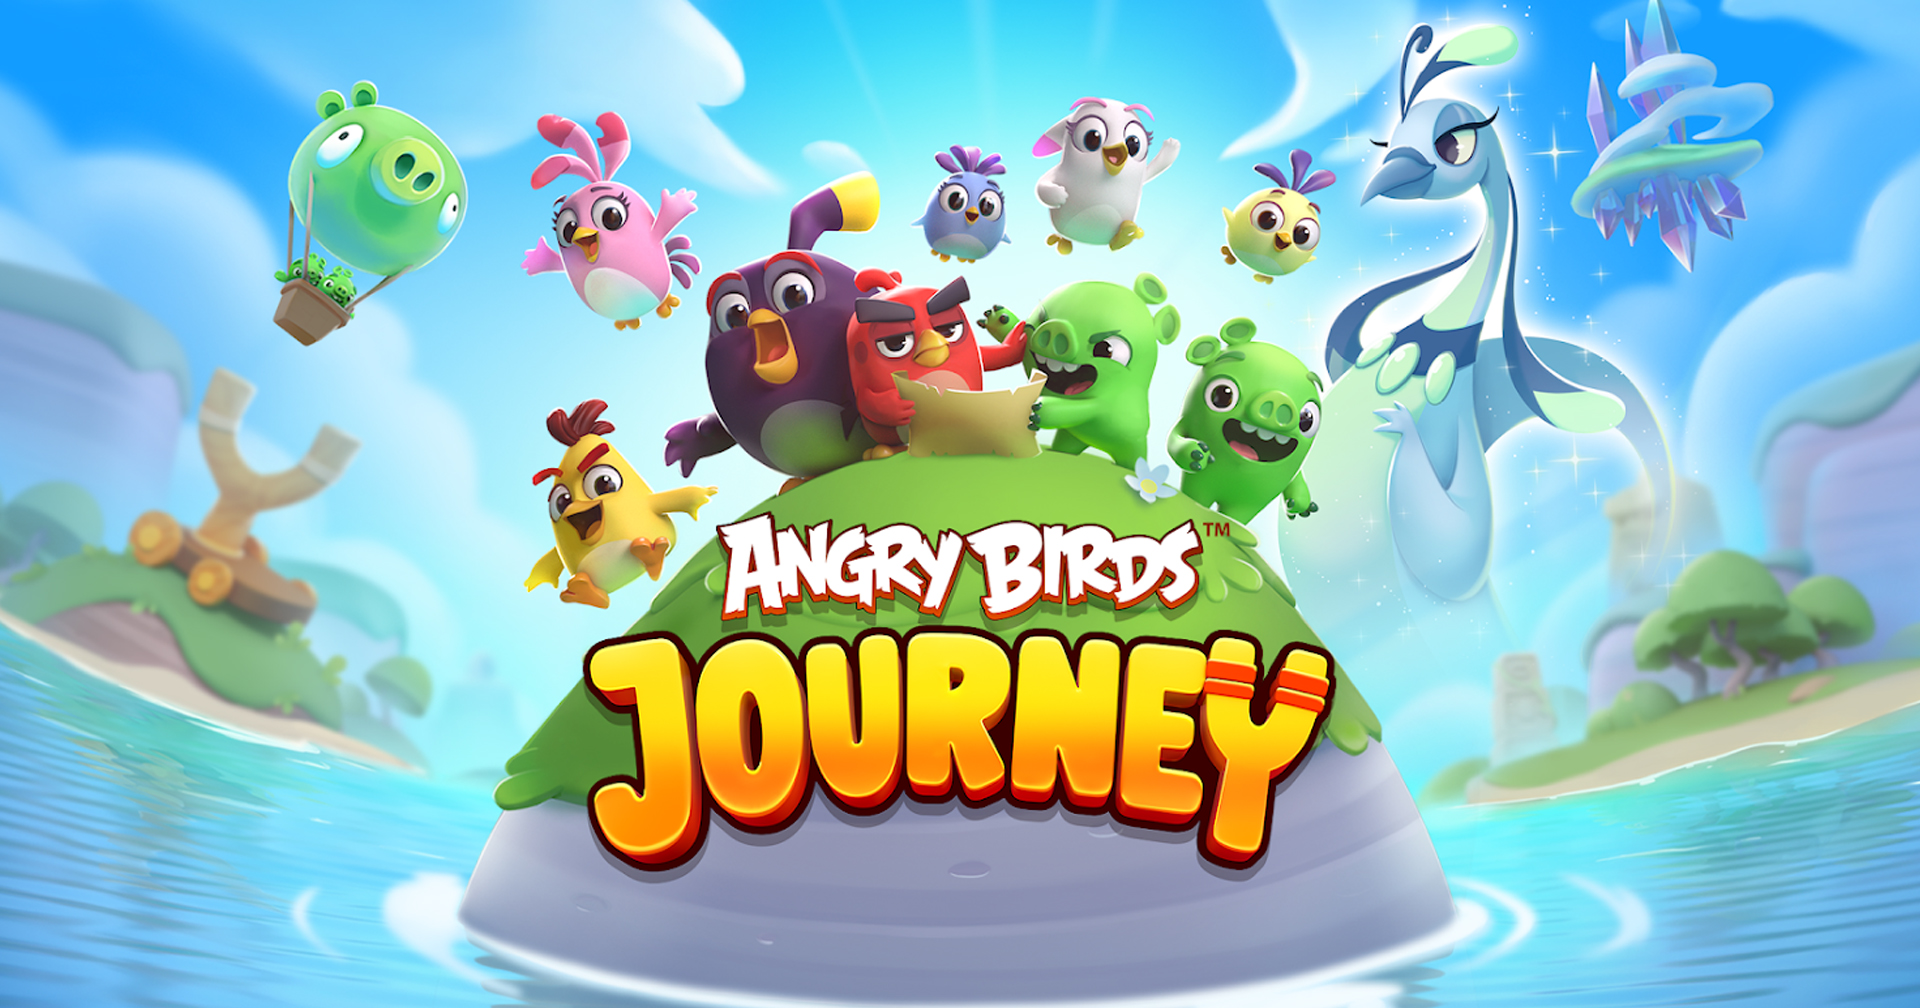 [รีวิวเกม] Angry Birds Journey การกลับมาของปักษาพิโรธ มีอะไรแตกต่างจากเดิมบ้าง มาดู